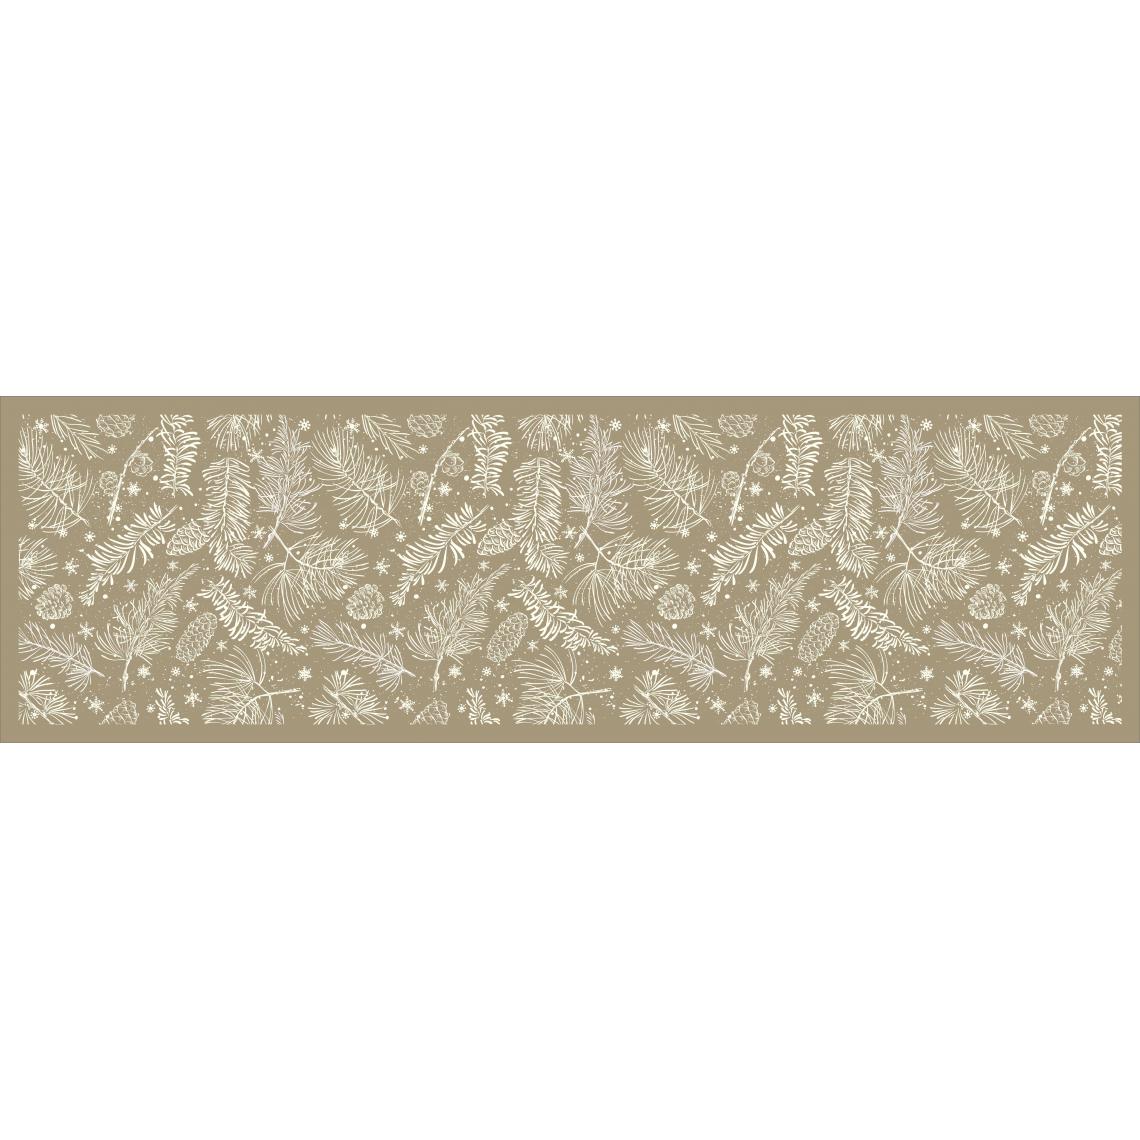 Alter - Chemin de cuisine, 100% Made in Italy, Tapis antitache avec impression numérique, Tapis antidérapant et lavable, Nordic - Modèle Cesario, 180x52 cm - Tapis